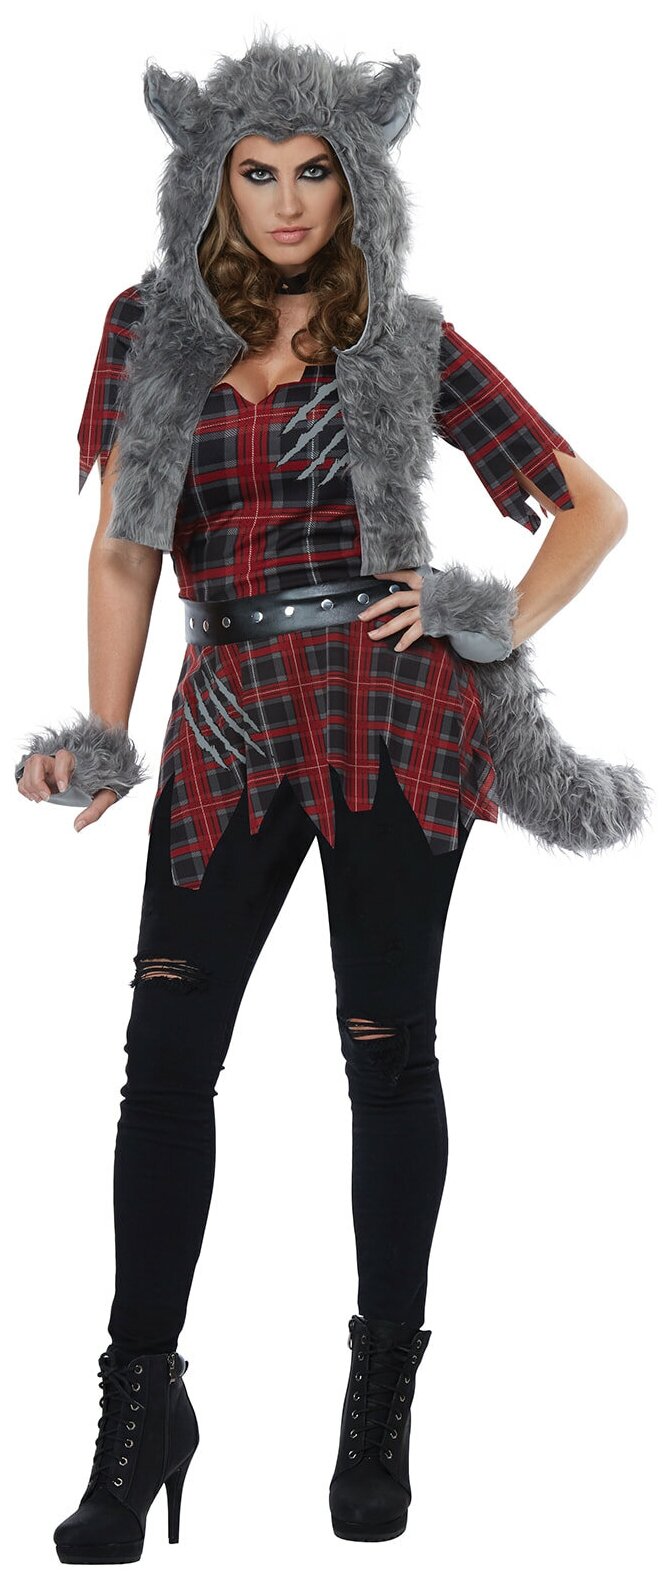 Костюм Волчица-оборотень взрослый California Costumes — купить сегодня c до...